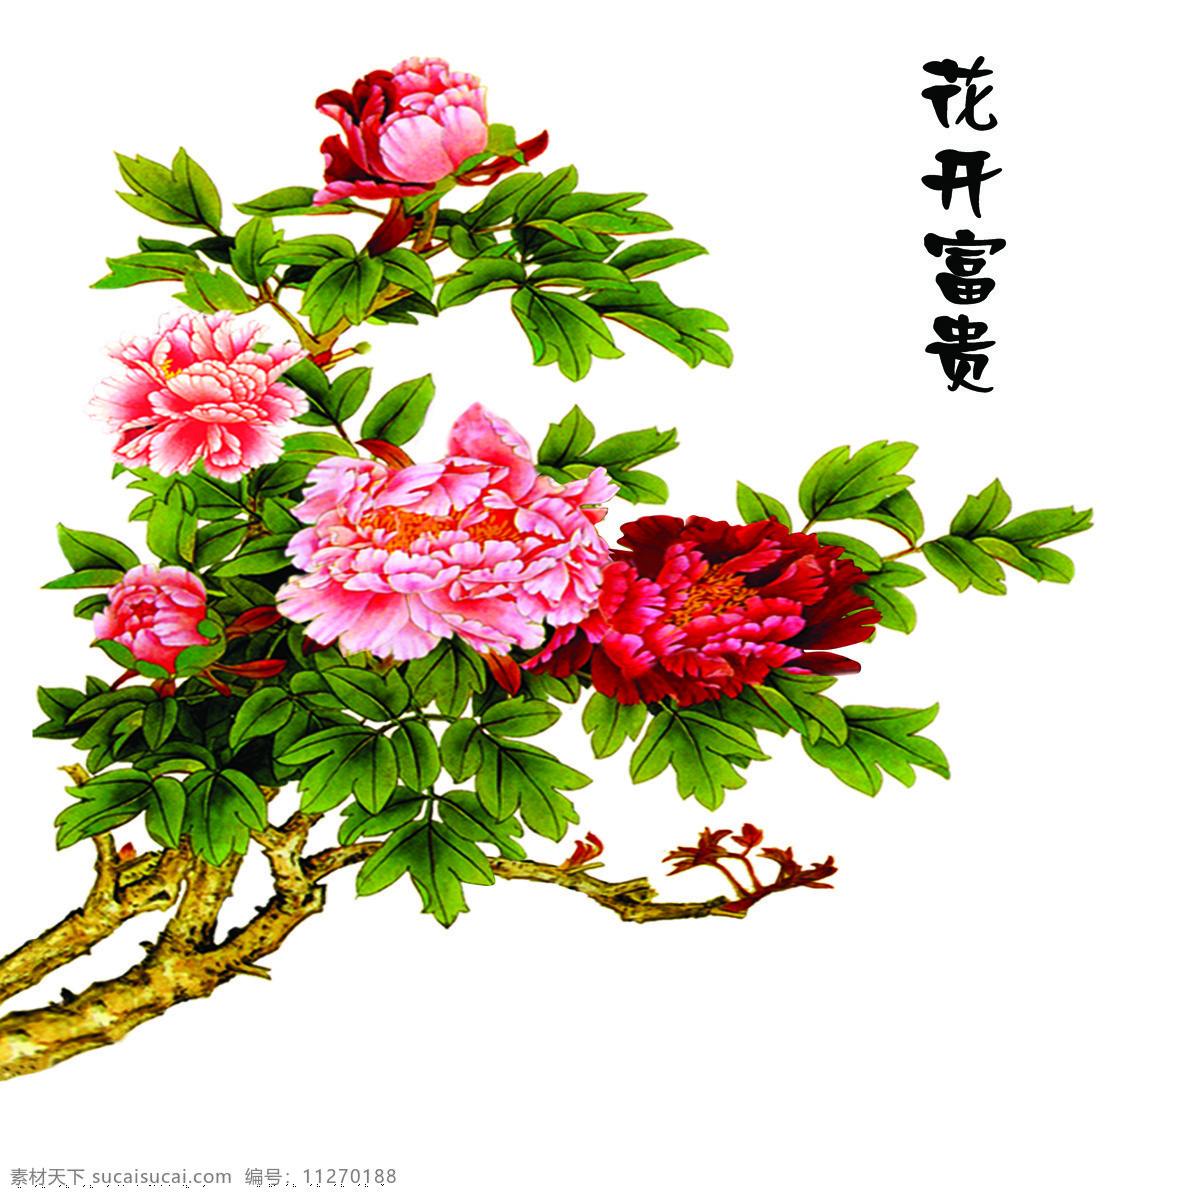 花开富贵 中国风 中式 传统 经典 古典 背景墙 瓷砖 牡丹花 中国画 国画 电视背景墙